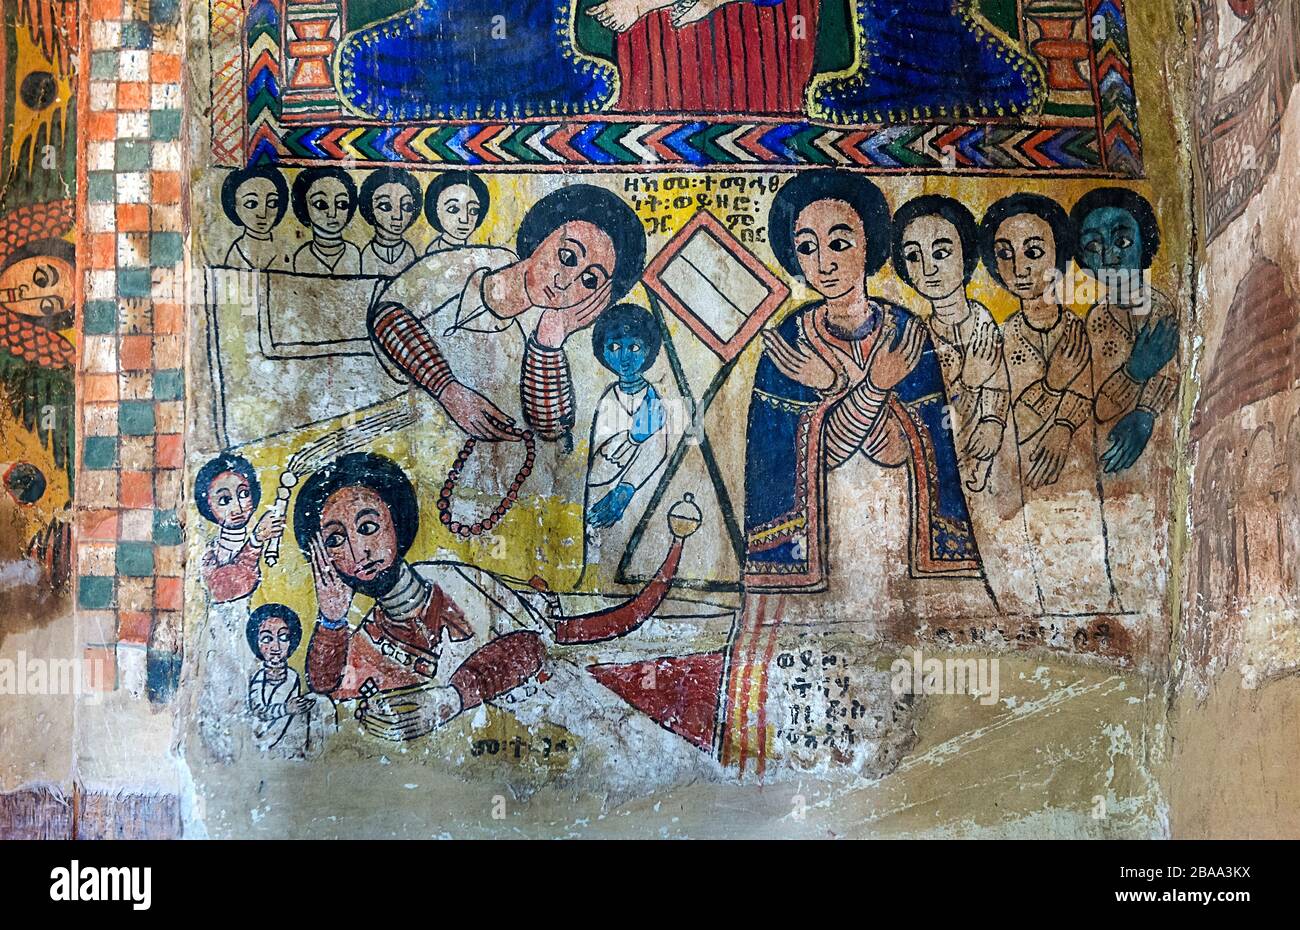 Pittura di tela nella chiesa ortodossa Abreha wa Atsbaha, regione di Gheralta, Tigray, Etiopia Foto Stock